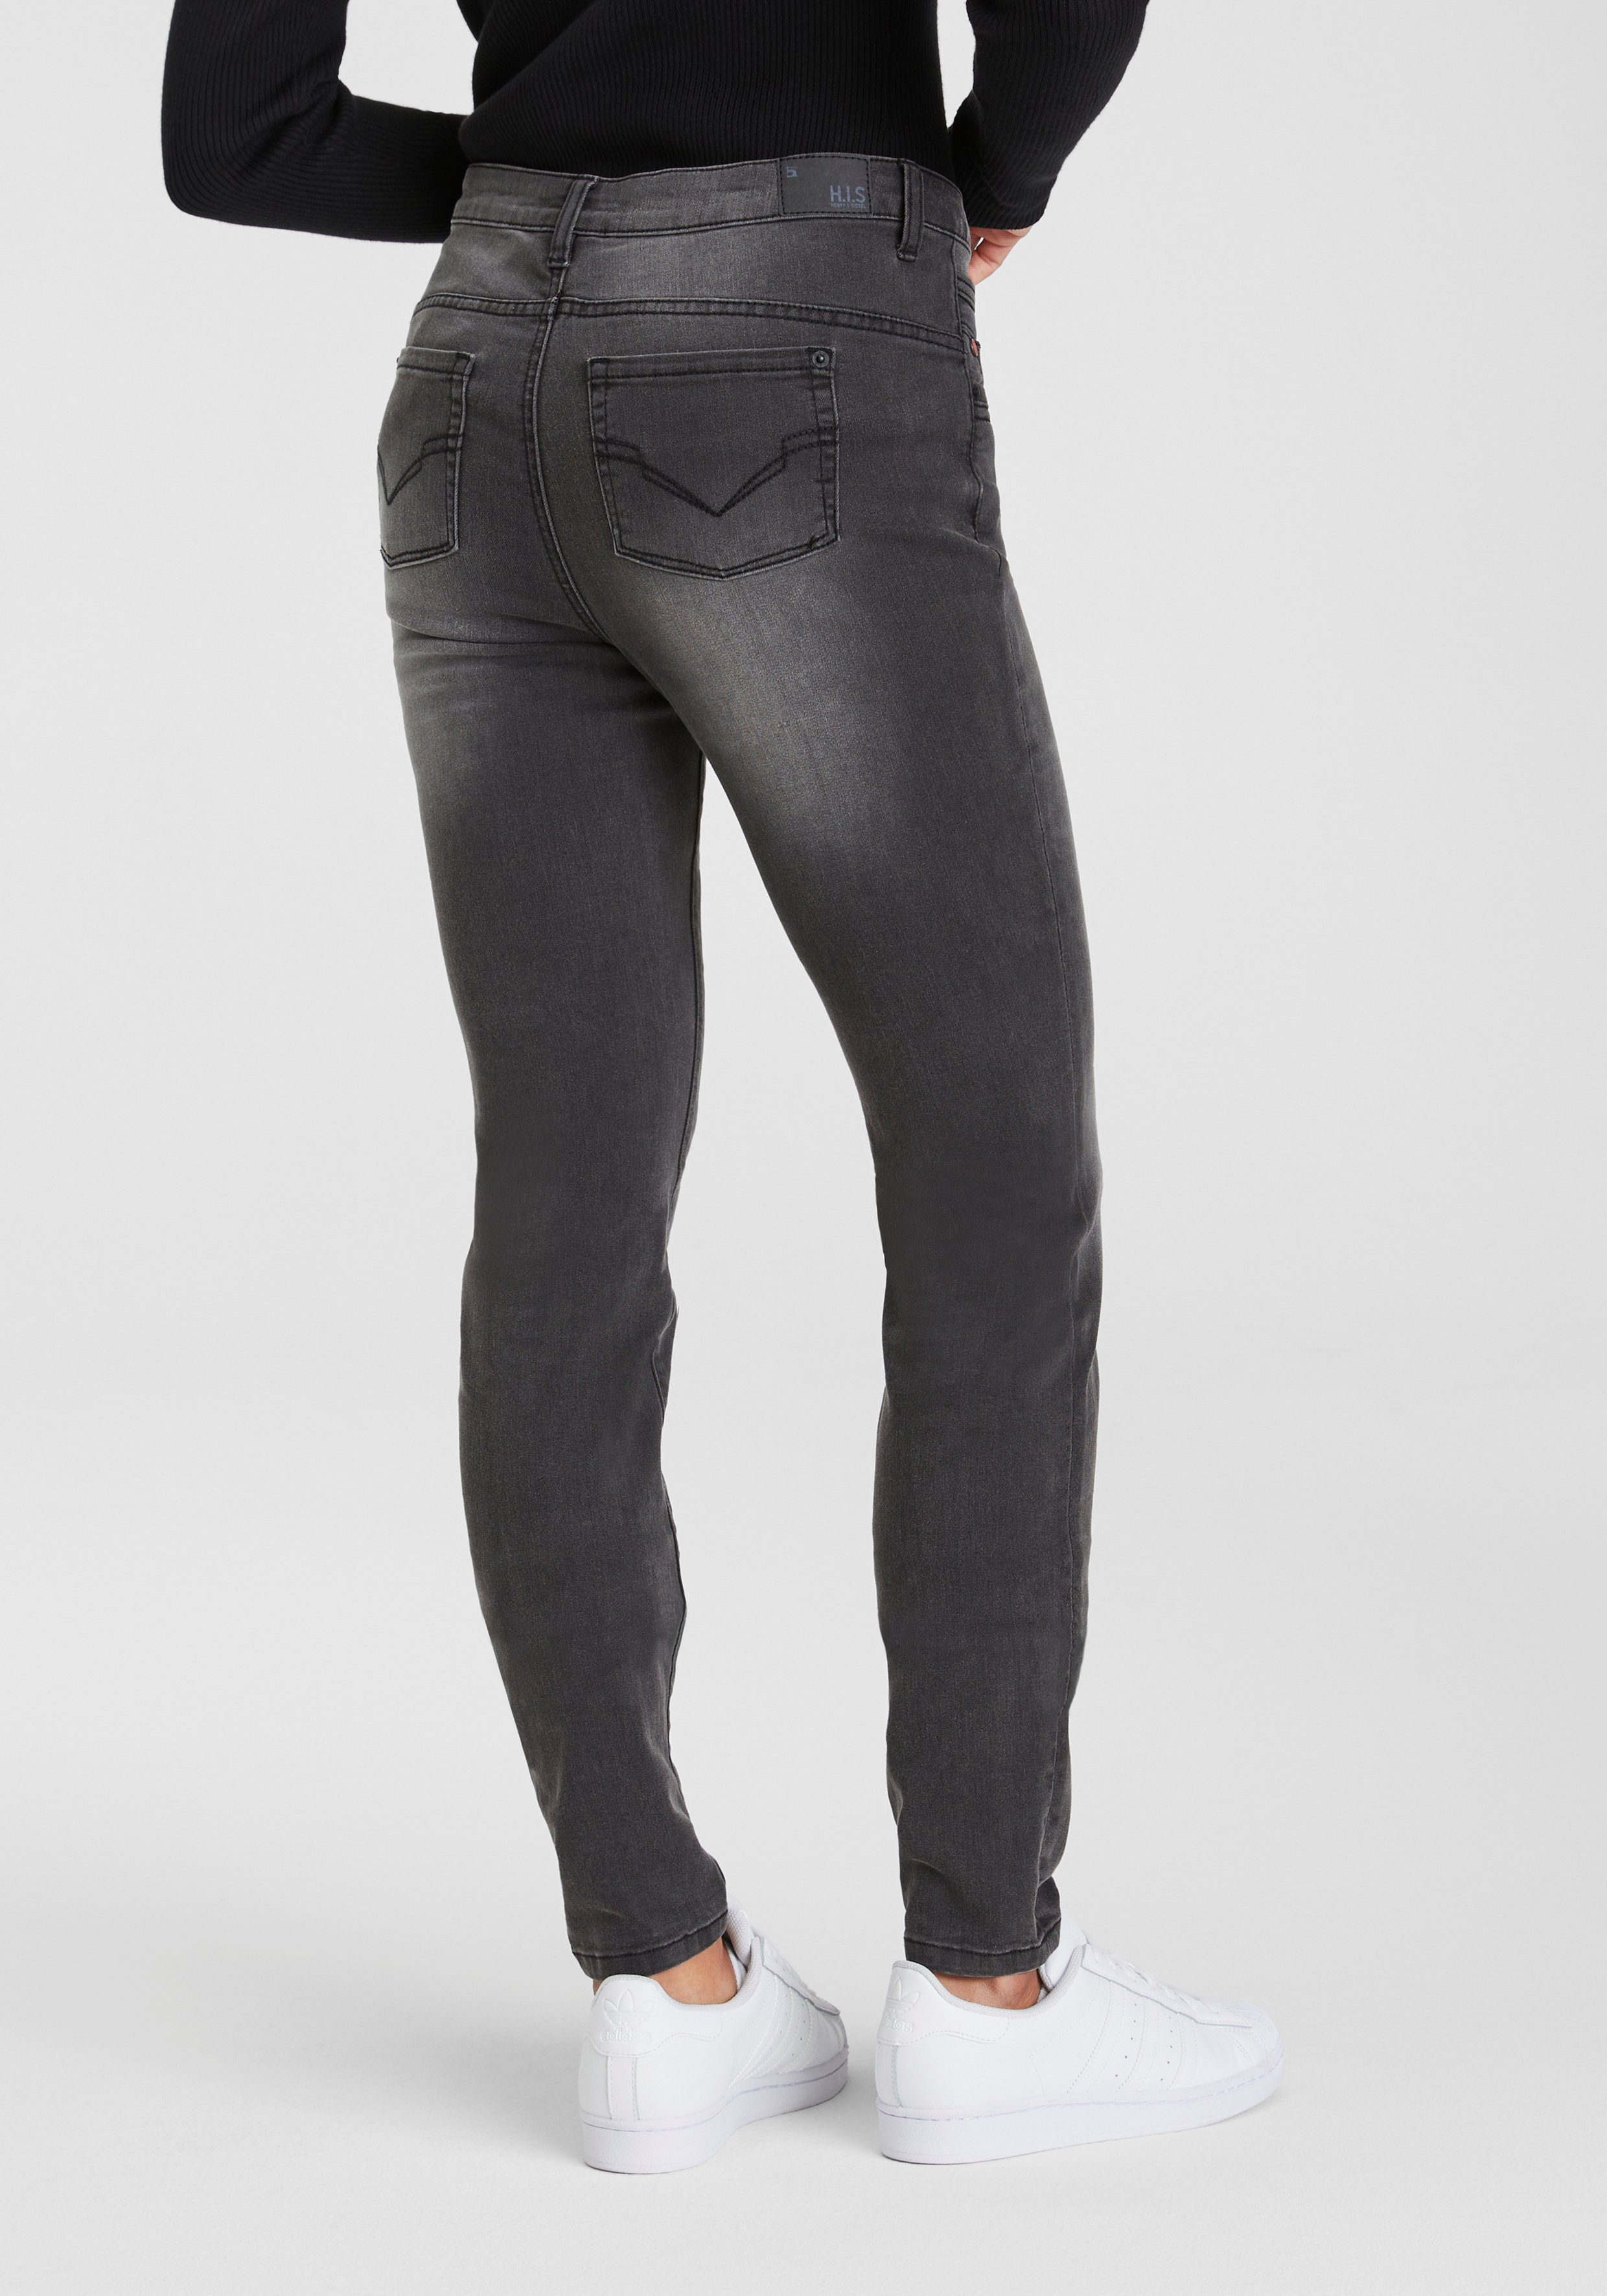 H.I.S 5-Pocket-Jeans ökologische, dark djunaHS grey Wash Produktion Ozon wassersparende durch